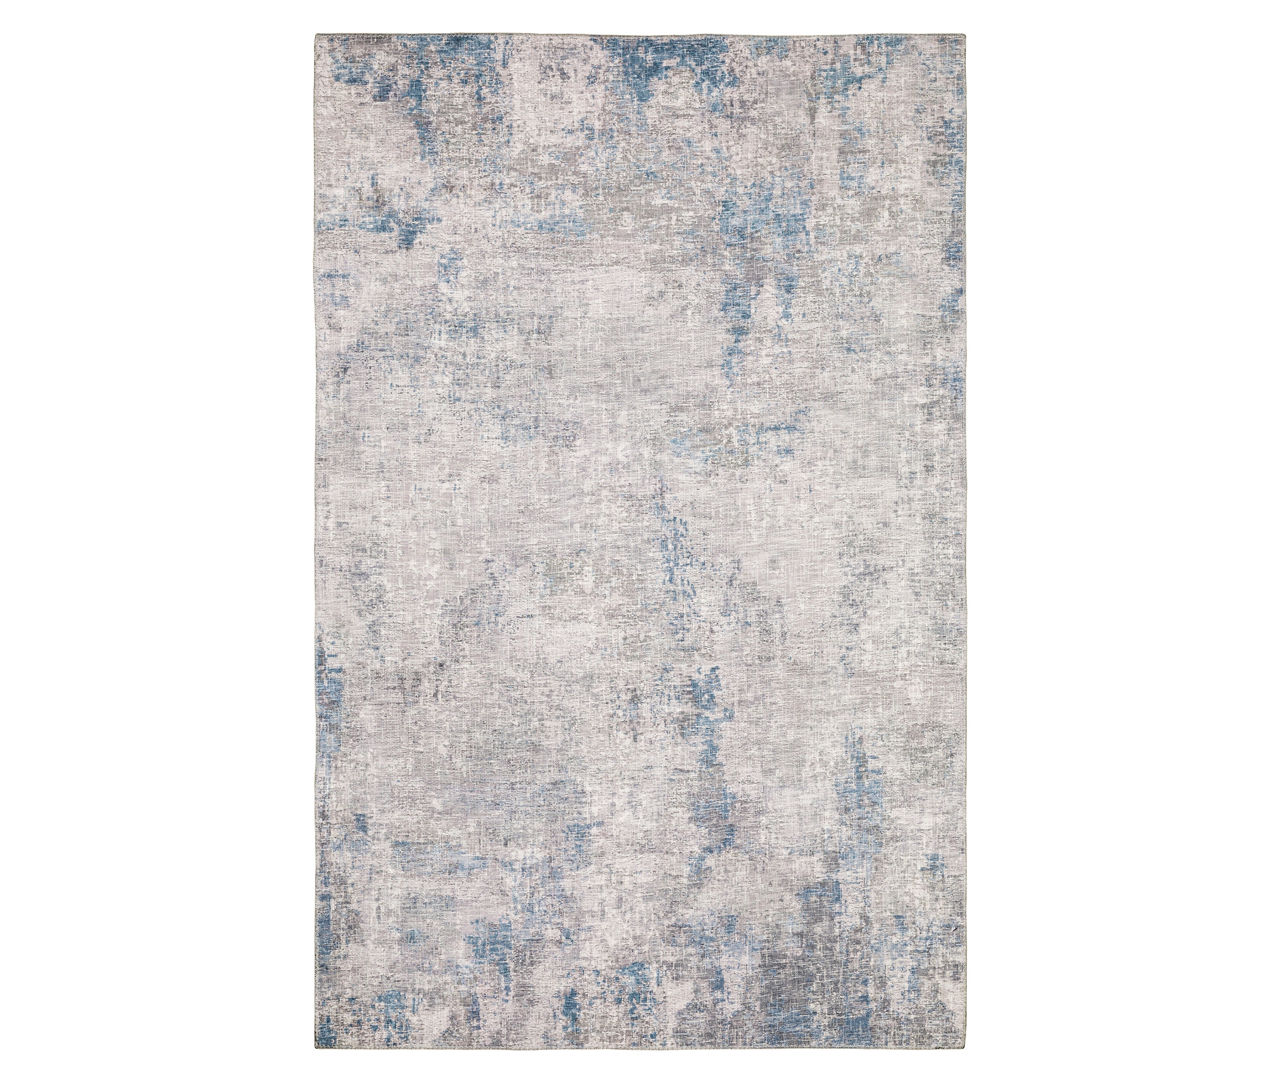 Mylan Gray & Blue Faux Hide Tile Pattern Area Rug, (5' x 7')